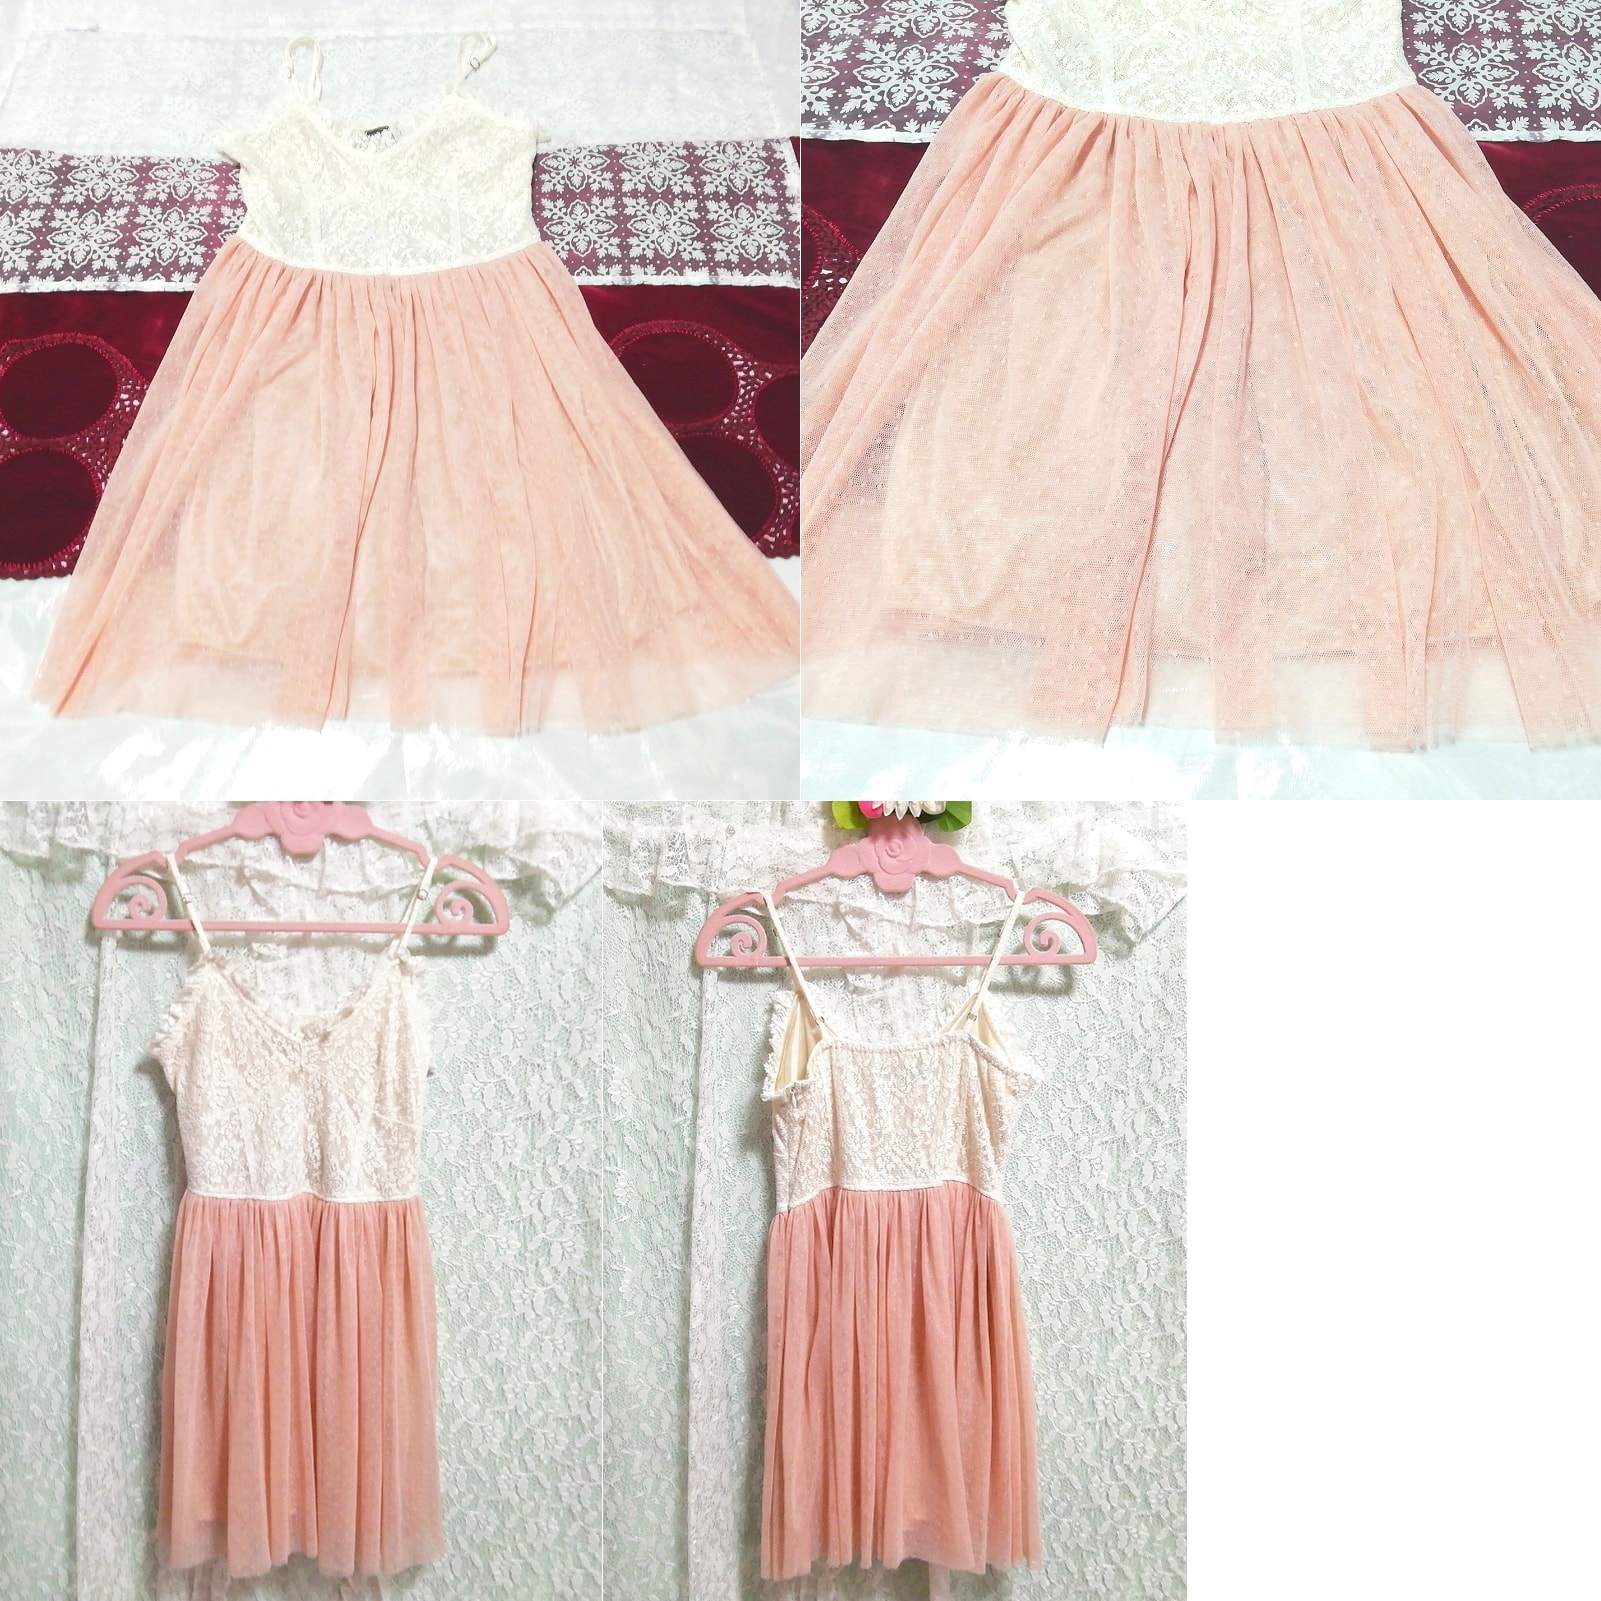 Weißes, rosafarbenes Negligé-Nachthemd aus Baumwolle mit Minirock und Camisole-Kleid aus Spitze, Mode, Frauenmode, Leibchen